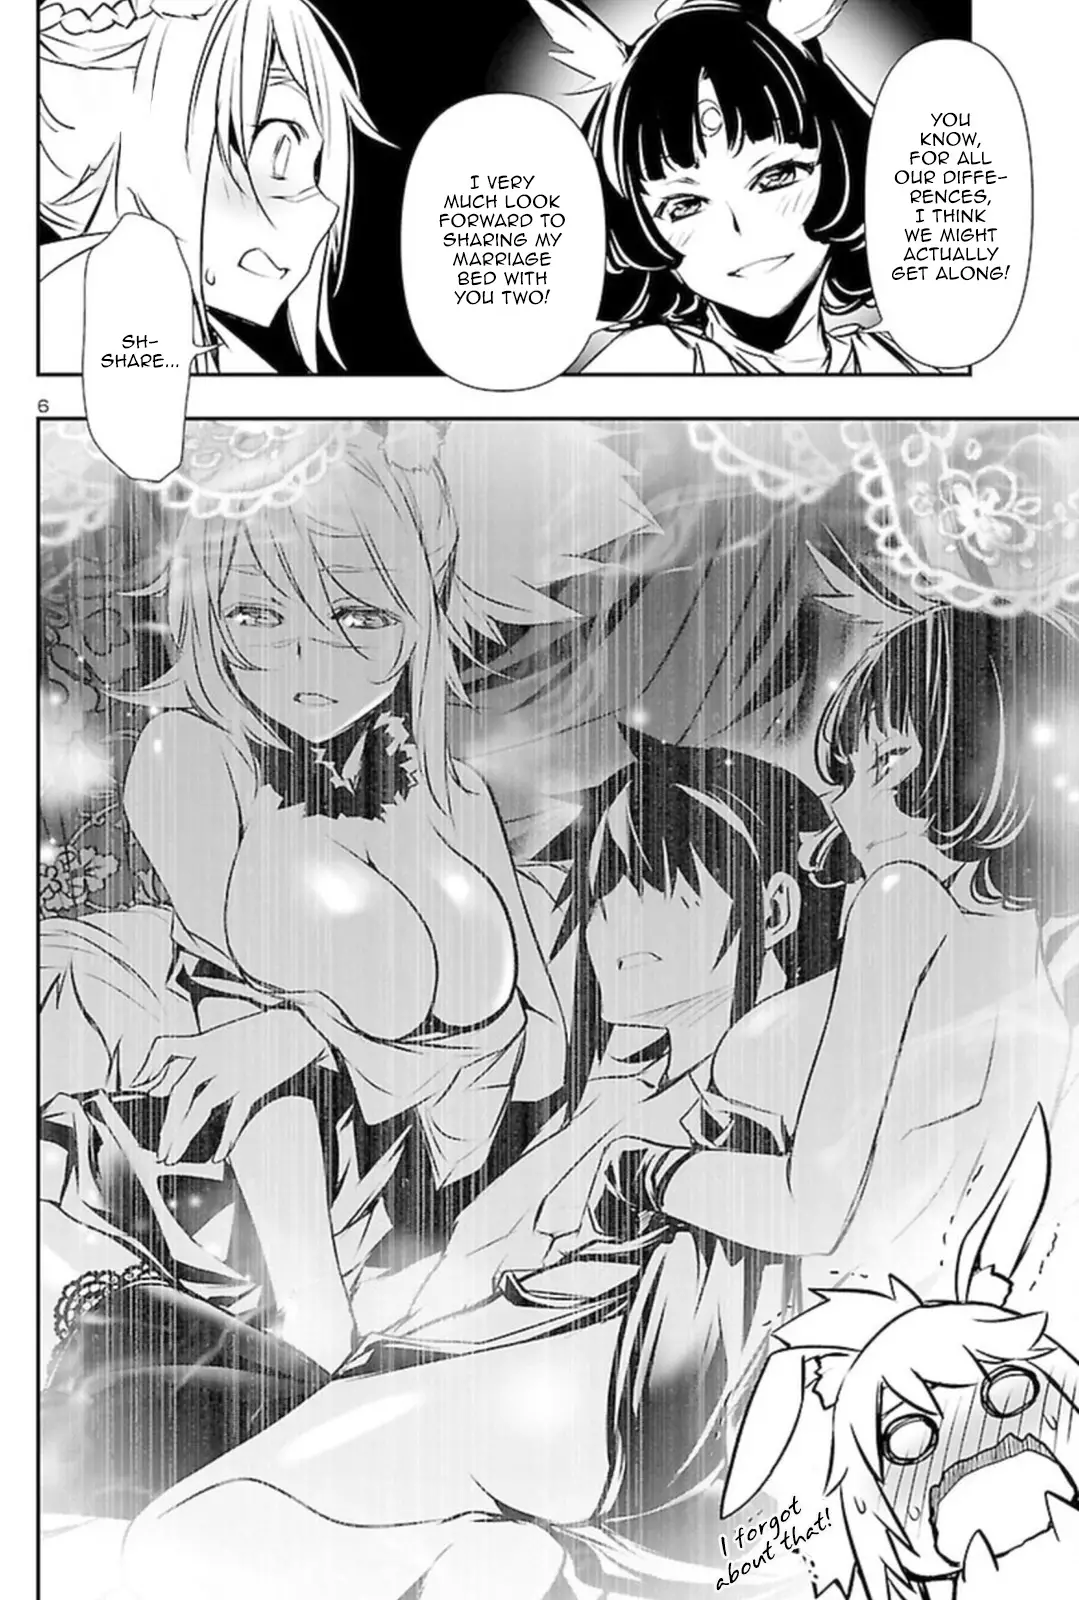 Shinju no Nectar - 68 page 6-11df475b